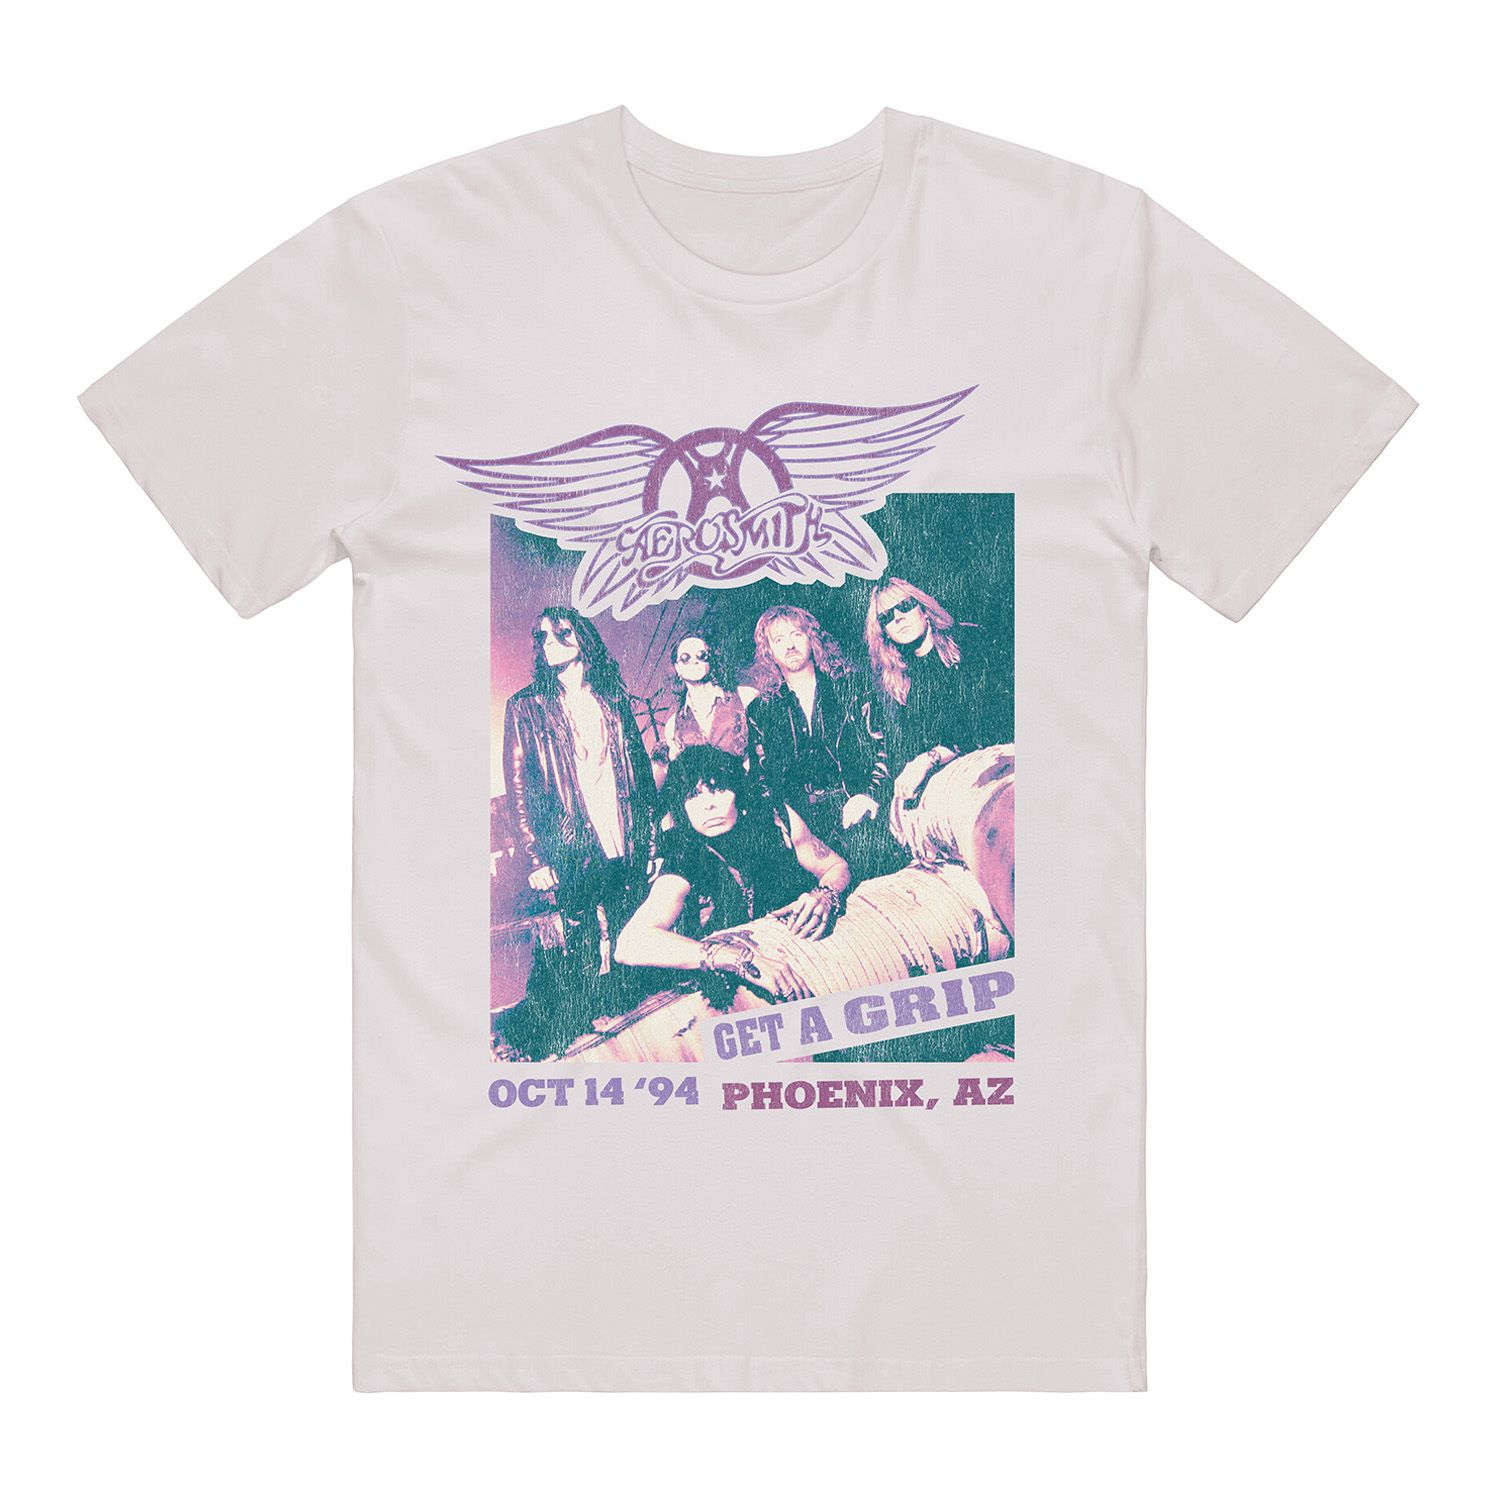 Мужская футболка с рисунком Aerosmith Licensed Character новое поступление 2019 мужская футболка новая модная мужская футболка с принтом рок группы